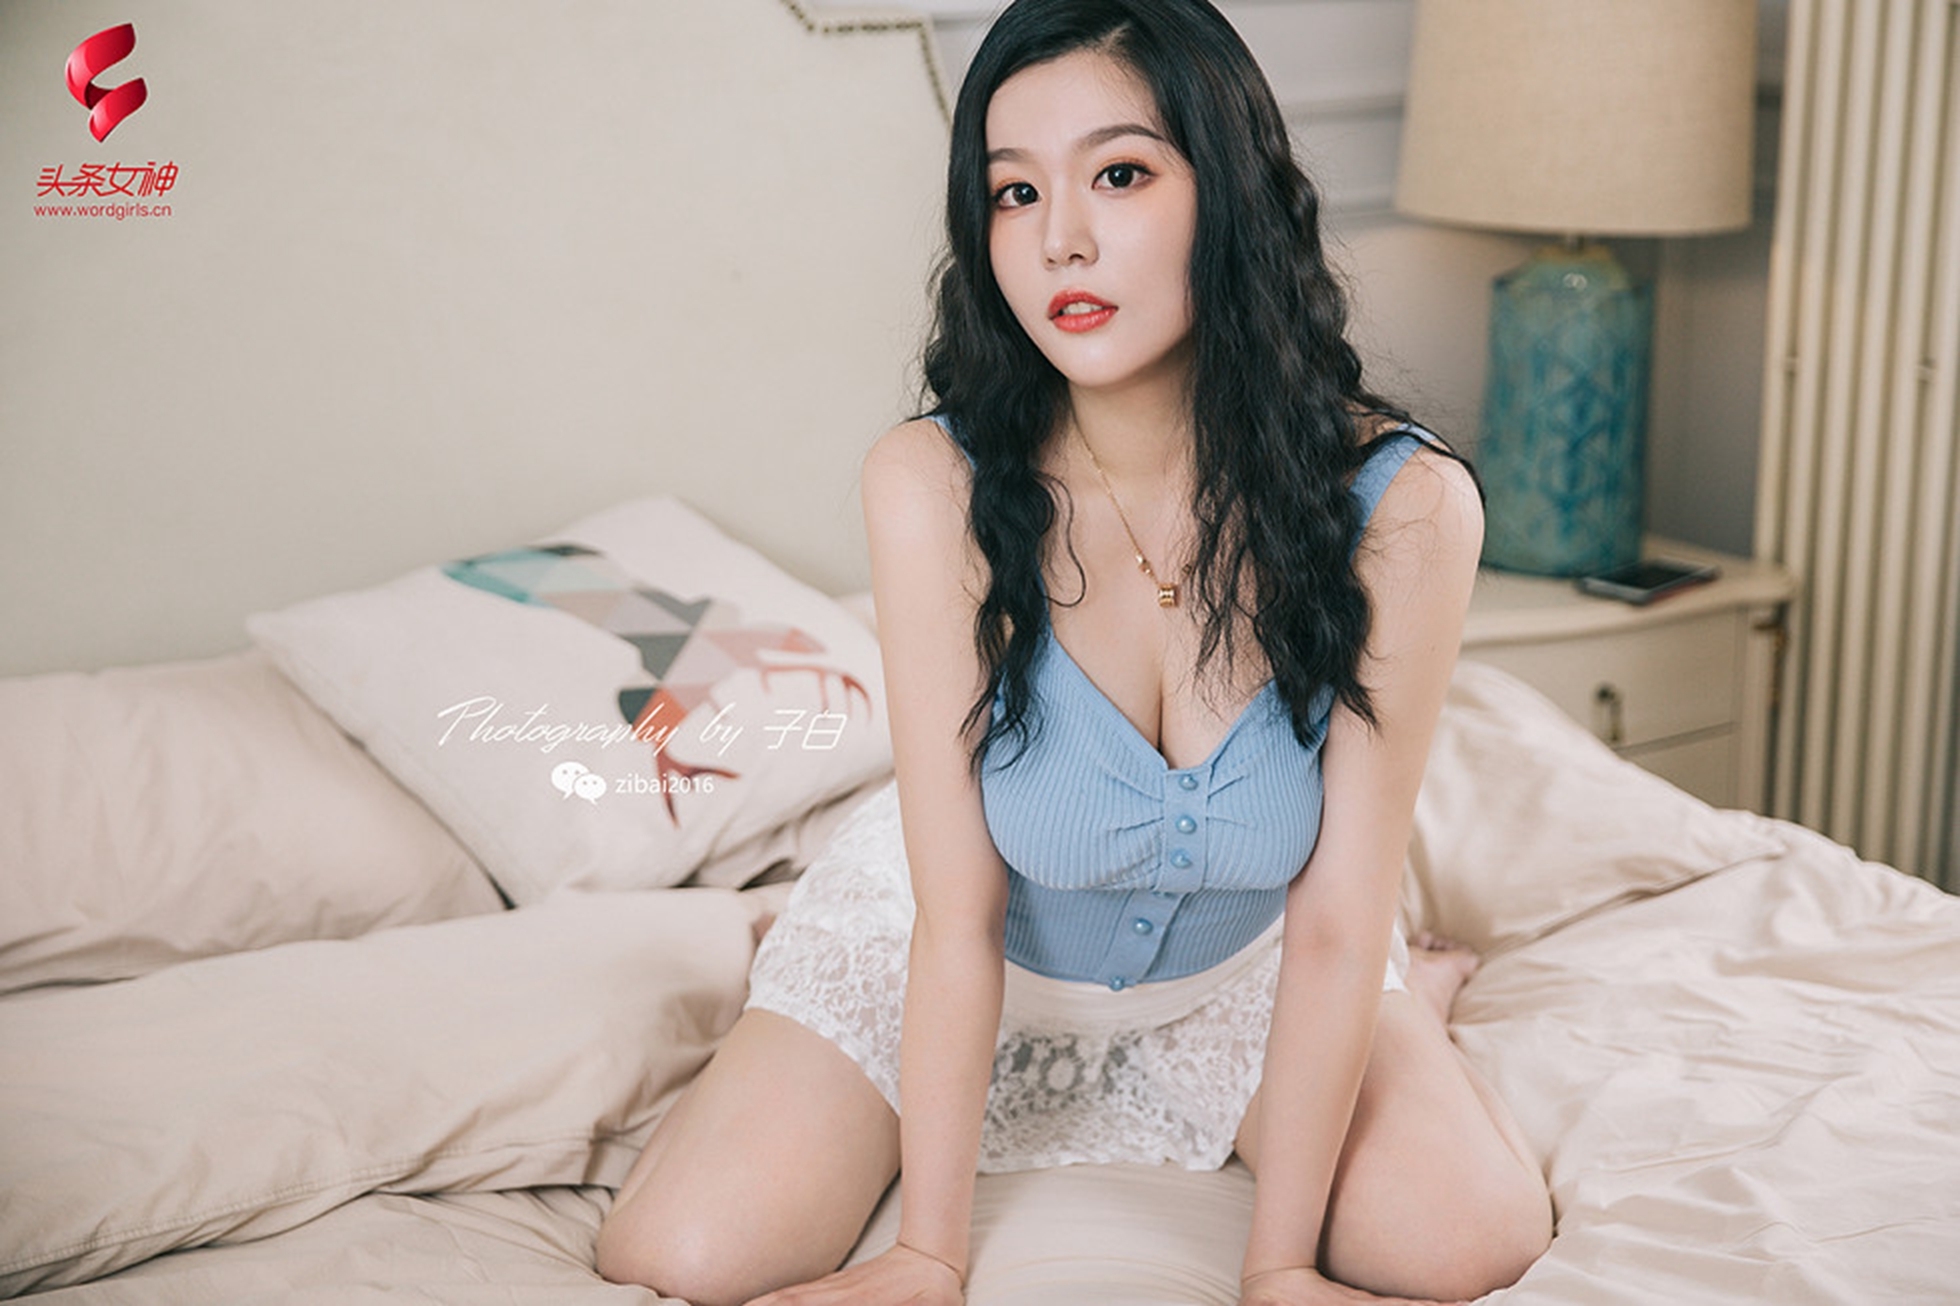 [Toutiao headline goddess] May 26, 2019 Zhong Qing